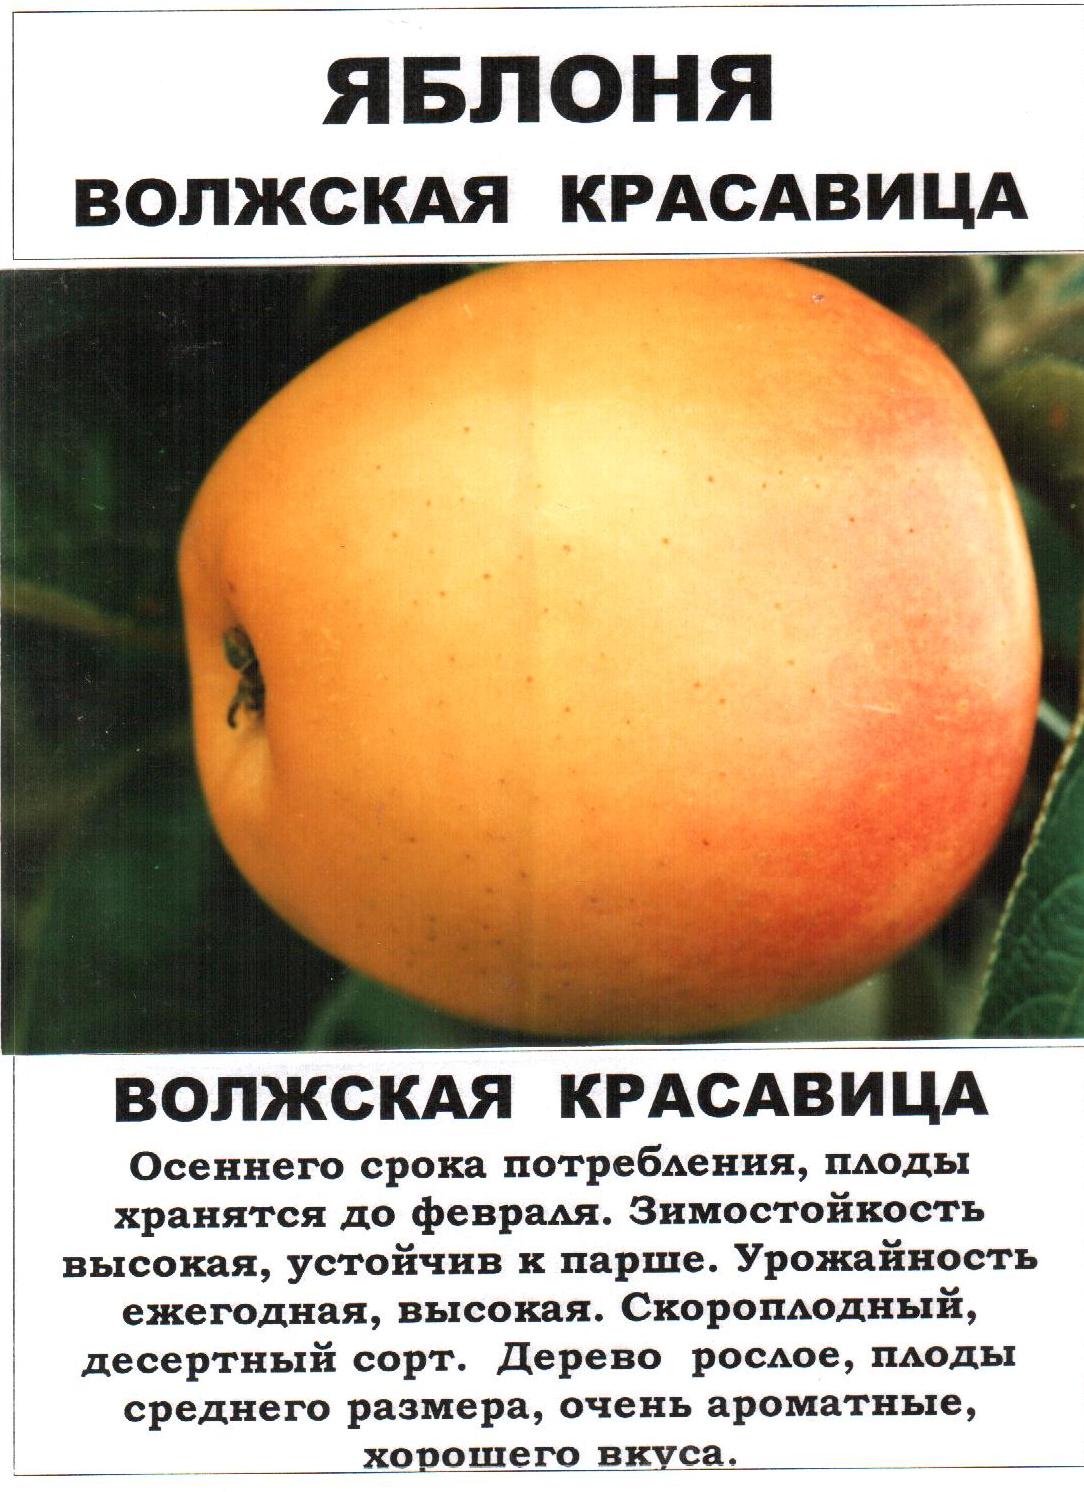 Яблоня башкирская красавица — подробная характеристика сорта